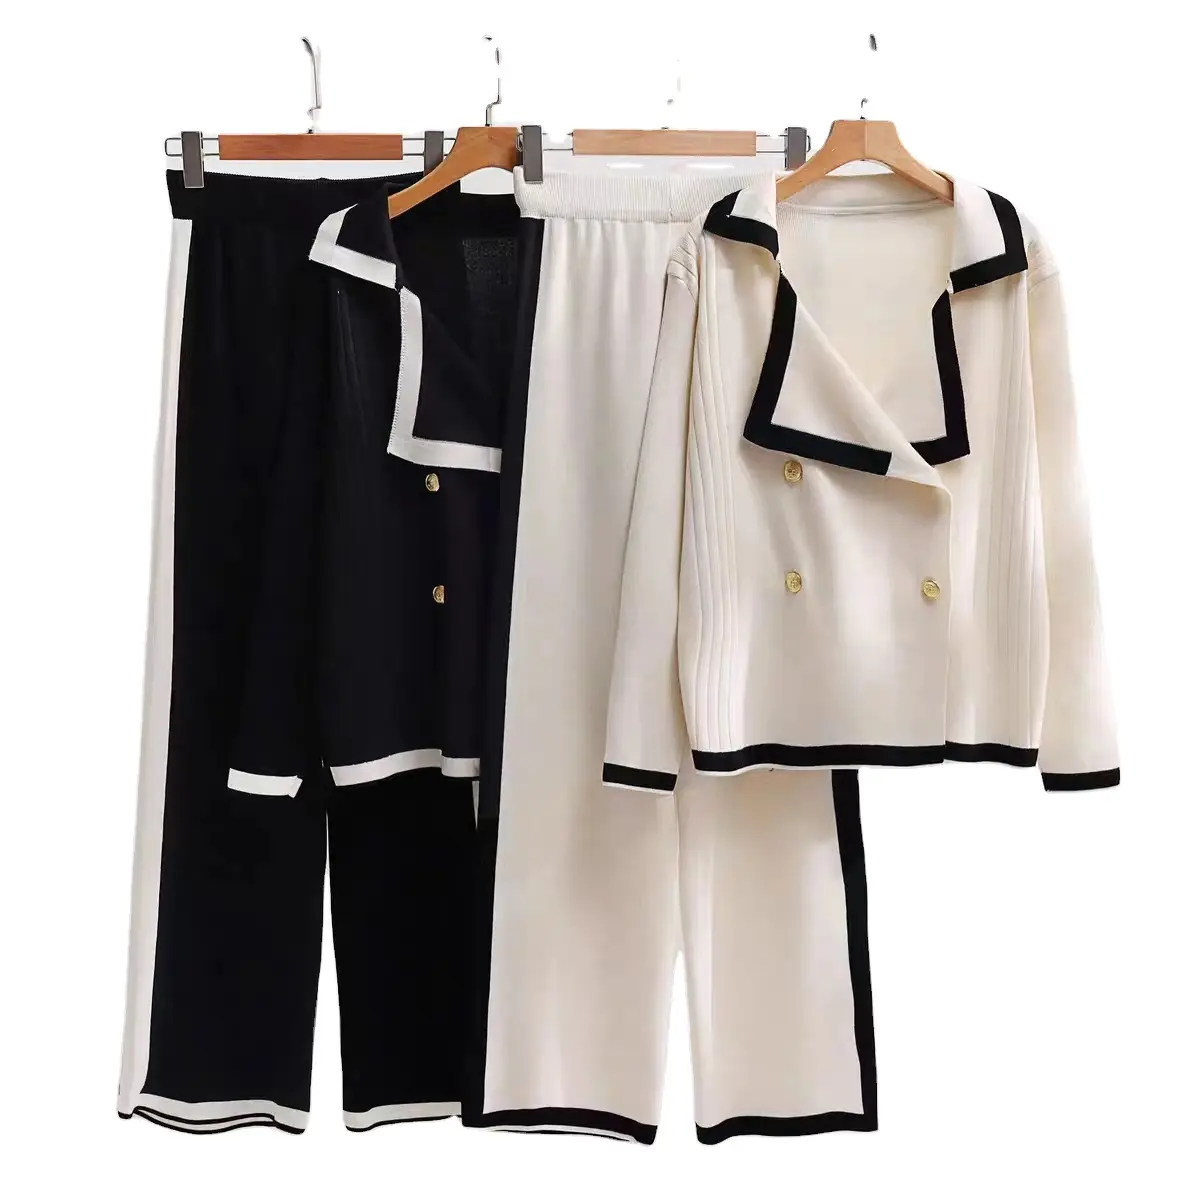 उच्च गुणवत्ता वाली महिलाओं का दो-टुकड़ा सेट वसंत/शरद ऋतु कार्यालय-उपयुक्त ठोस रंग टॉप पोलो कॉलर लंबी आस्तीन वाली लंबी पैंट सेट के साथ